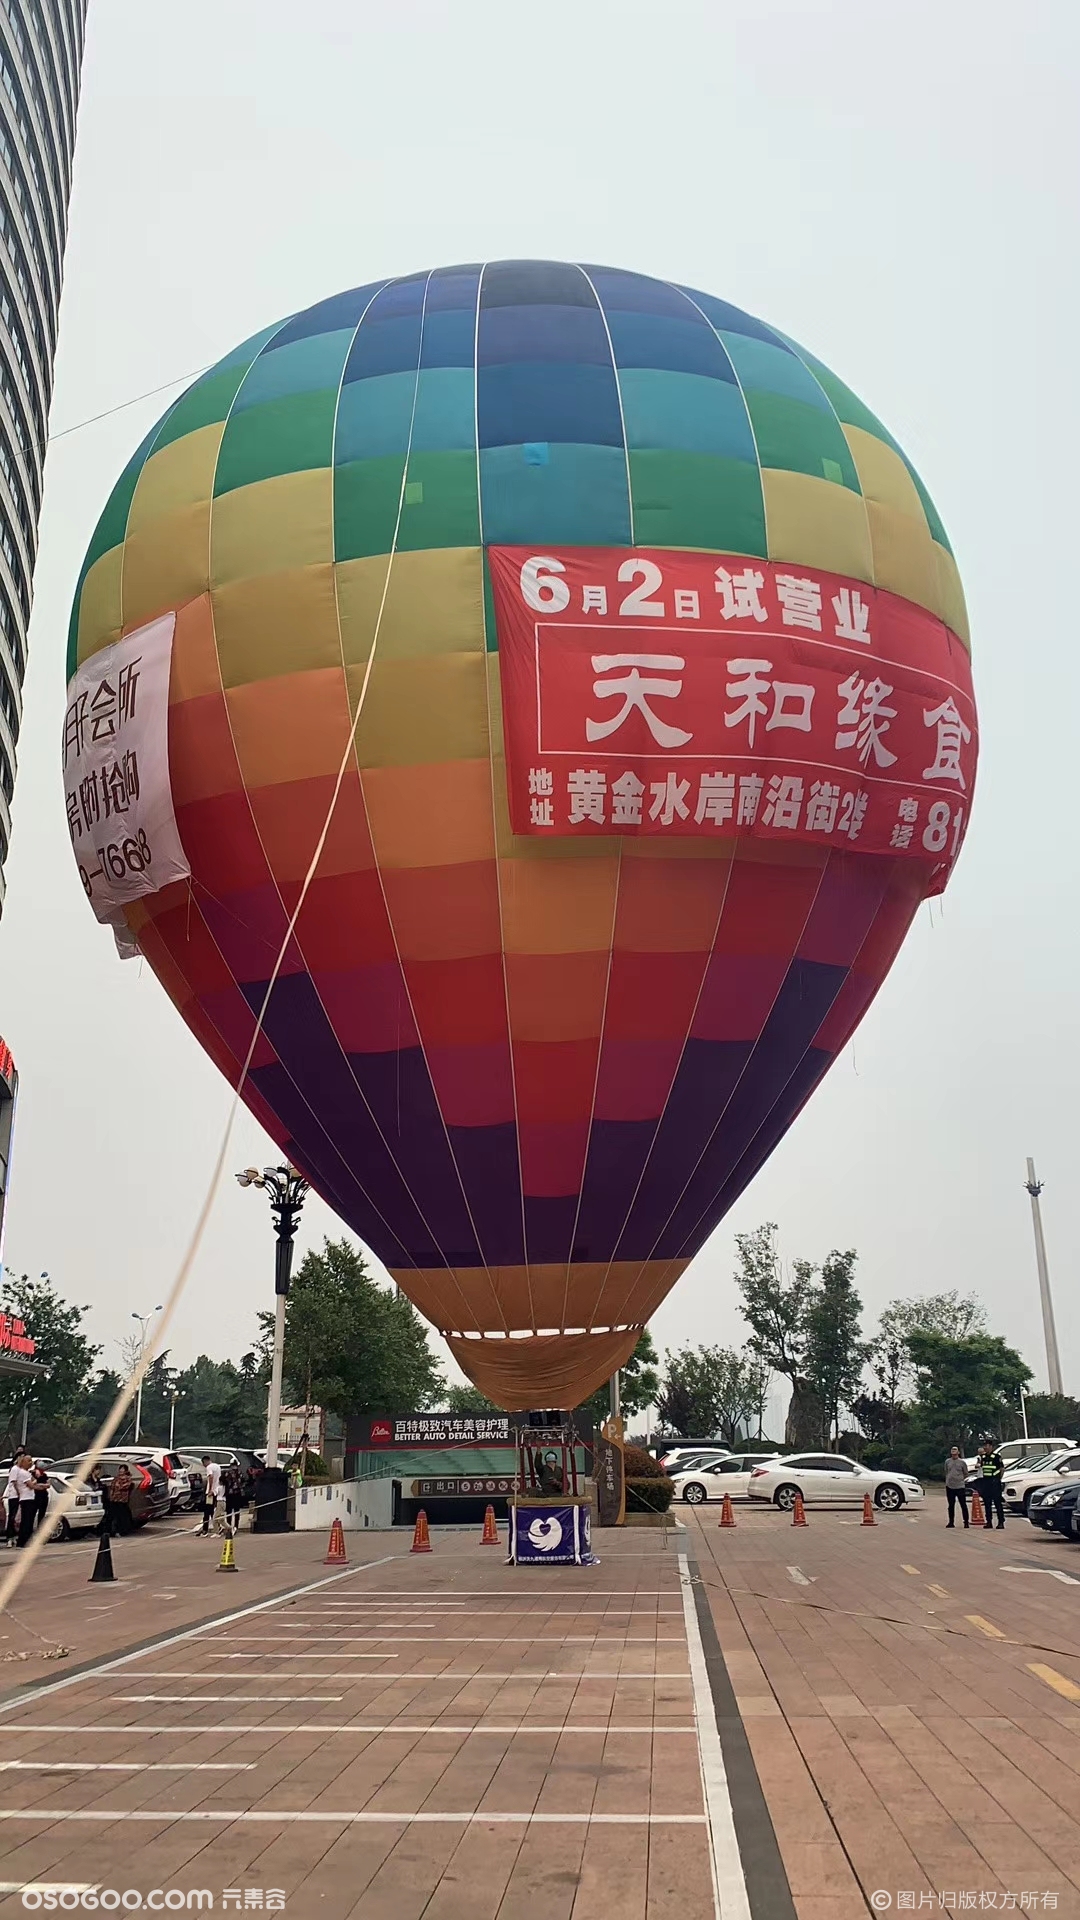 新疆地区热气球运营指南-旅发网,专业的旅游开发运营服务平台www.lvfacn.com